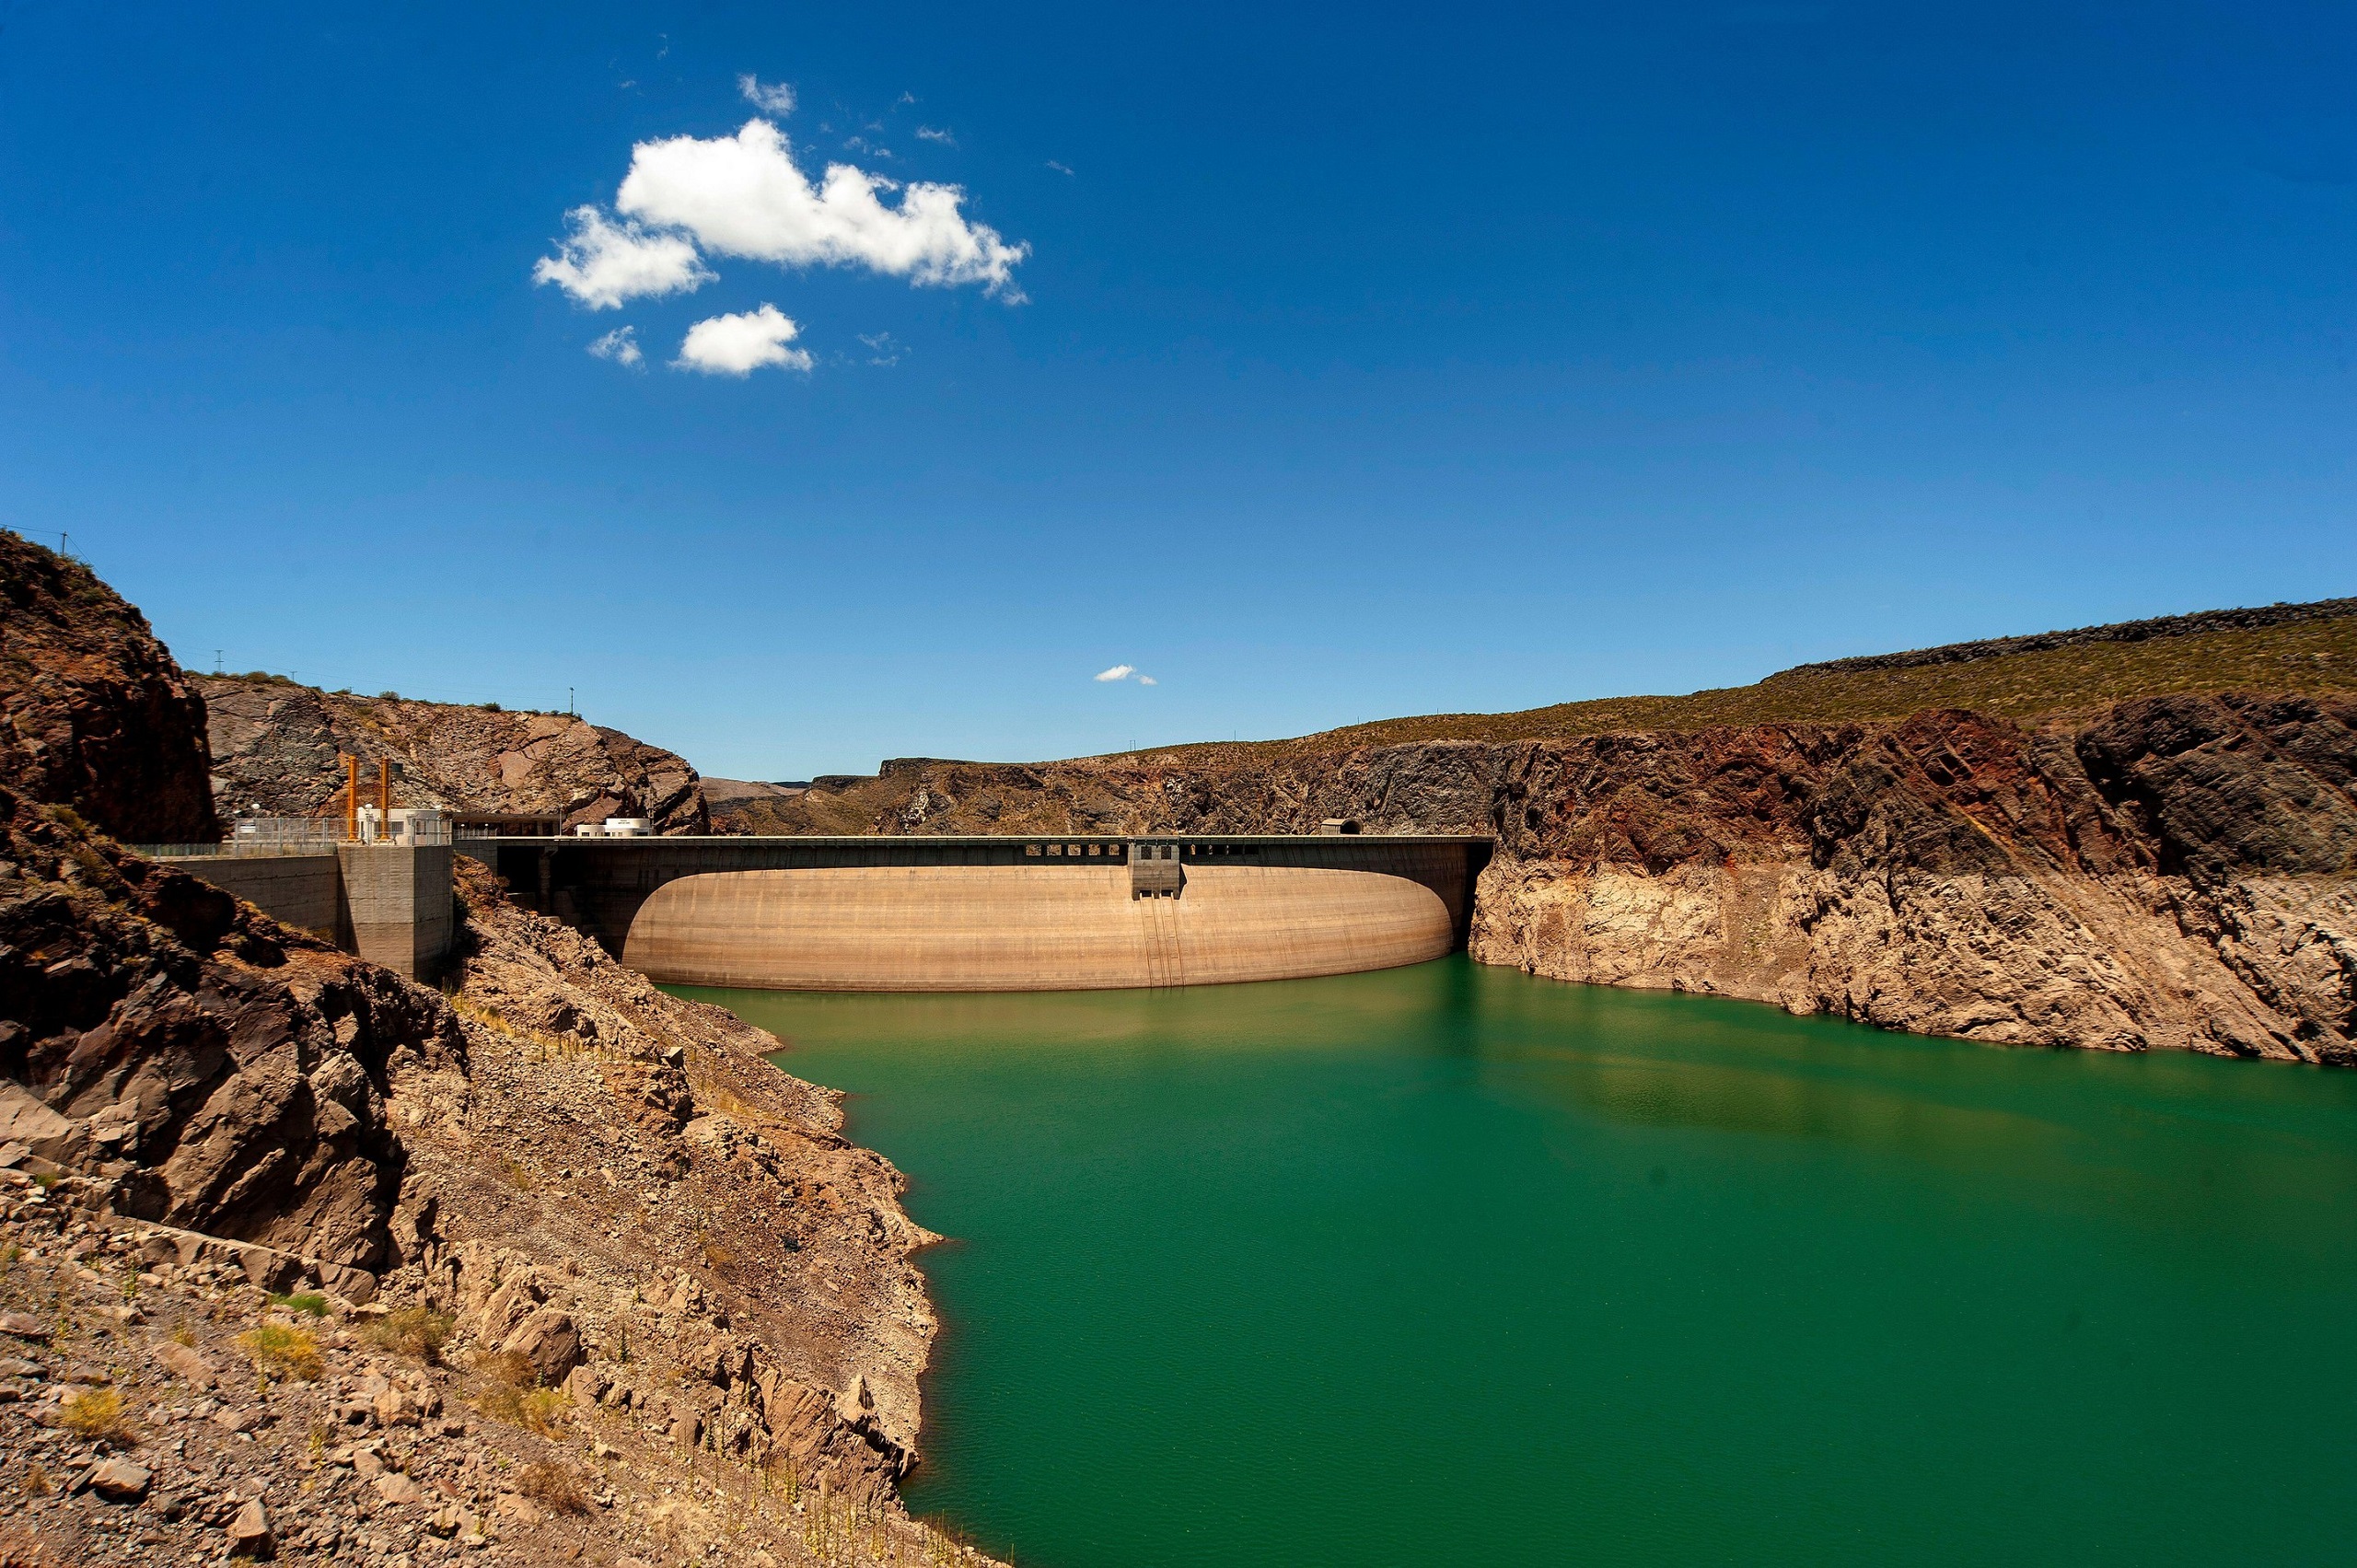 <p>La represa Agua de Toro en Mendoza, Argentina. El nuevo plan de transición energética del país prevé una inversión estimada de 7.400 millones de dólares en energía hidroeléctrica para 2030 (Imagen: Fernando Quevedo / Alamy)</p>